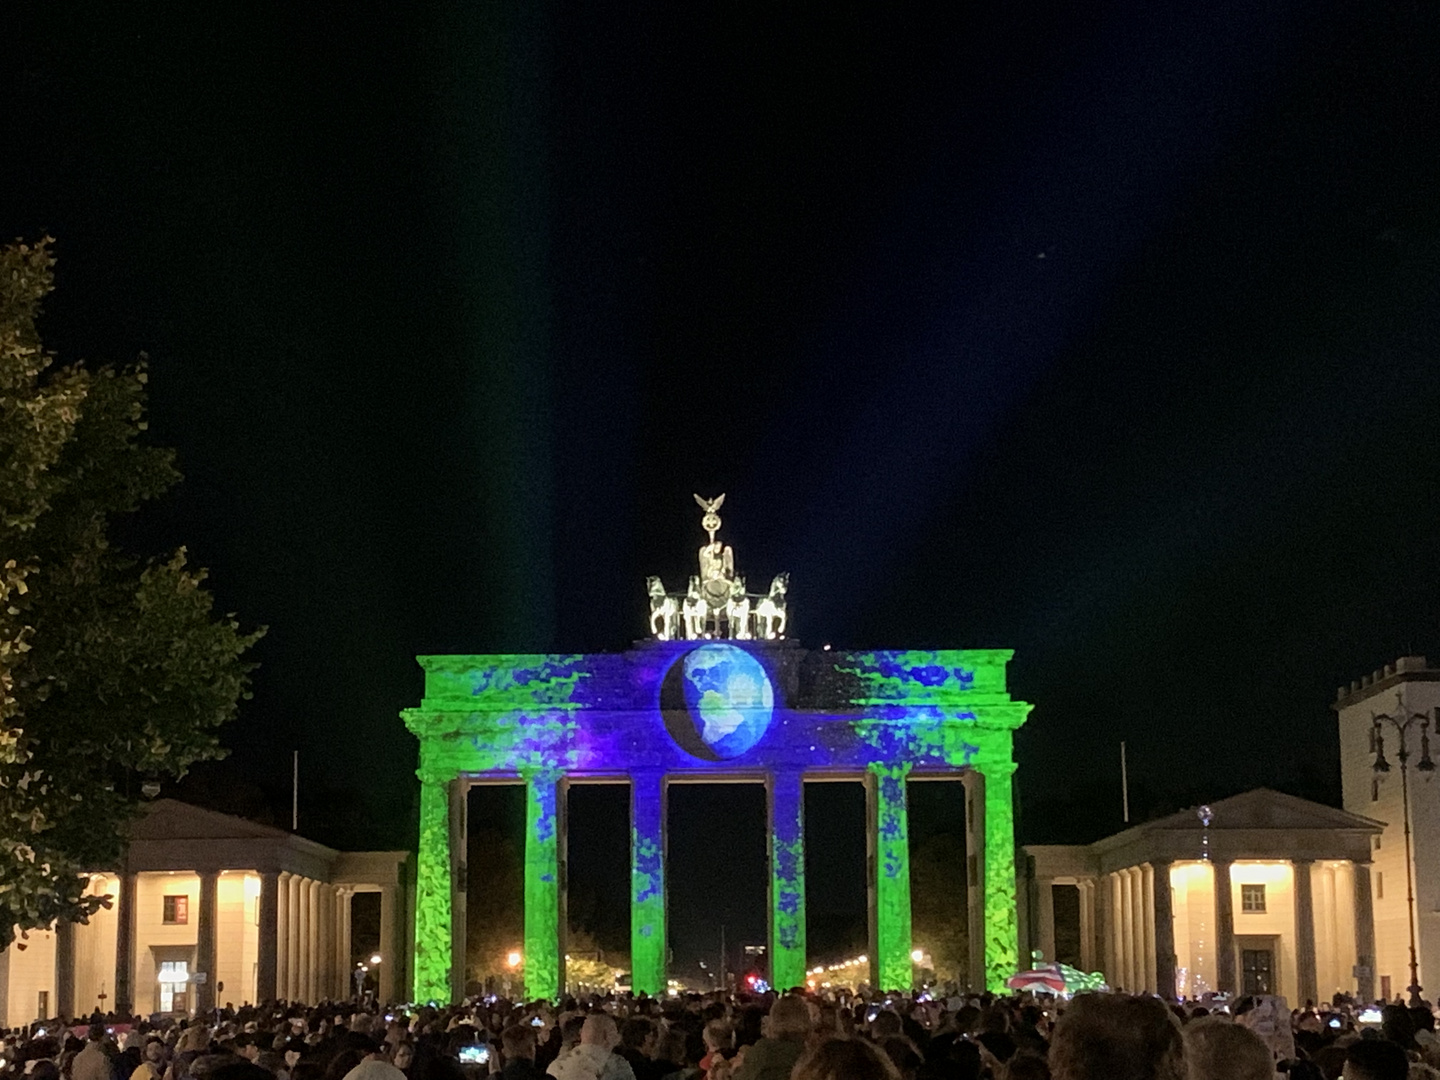 Festival of Lights Berlin 